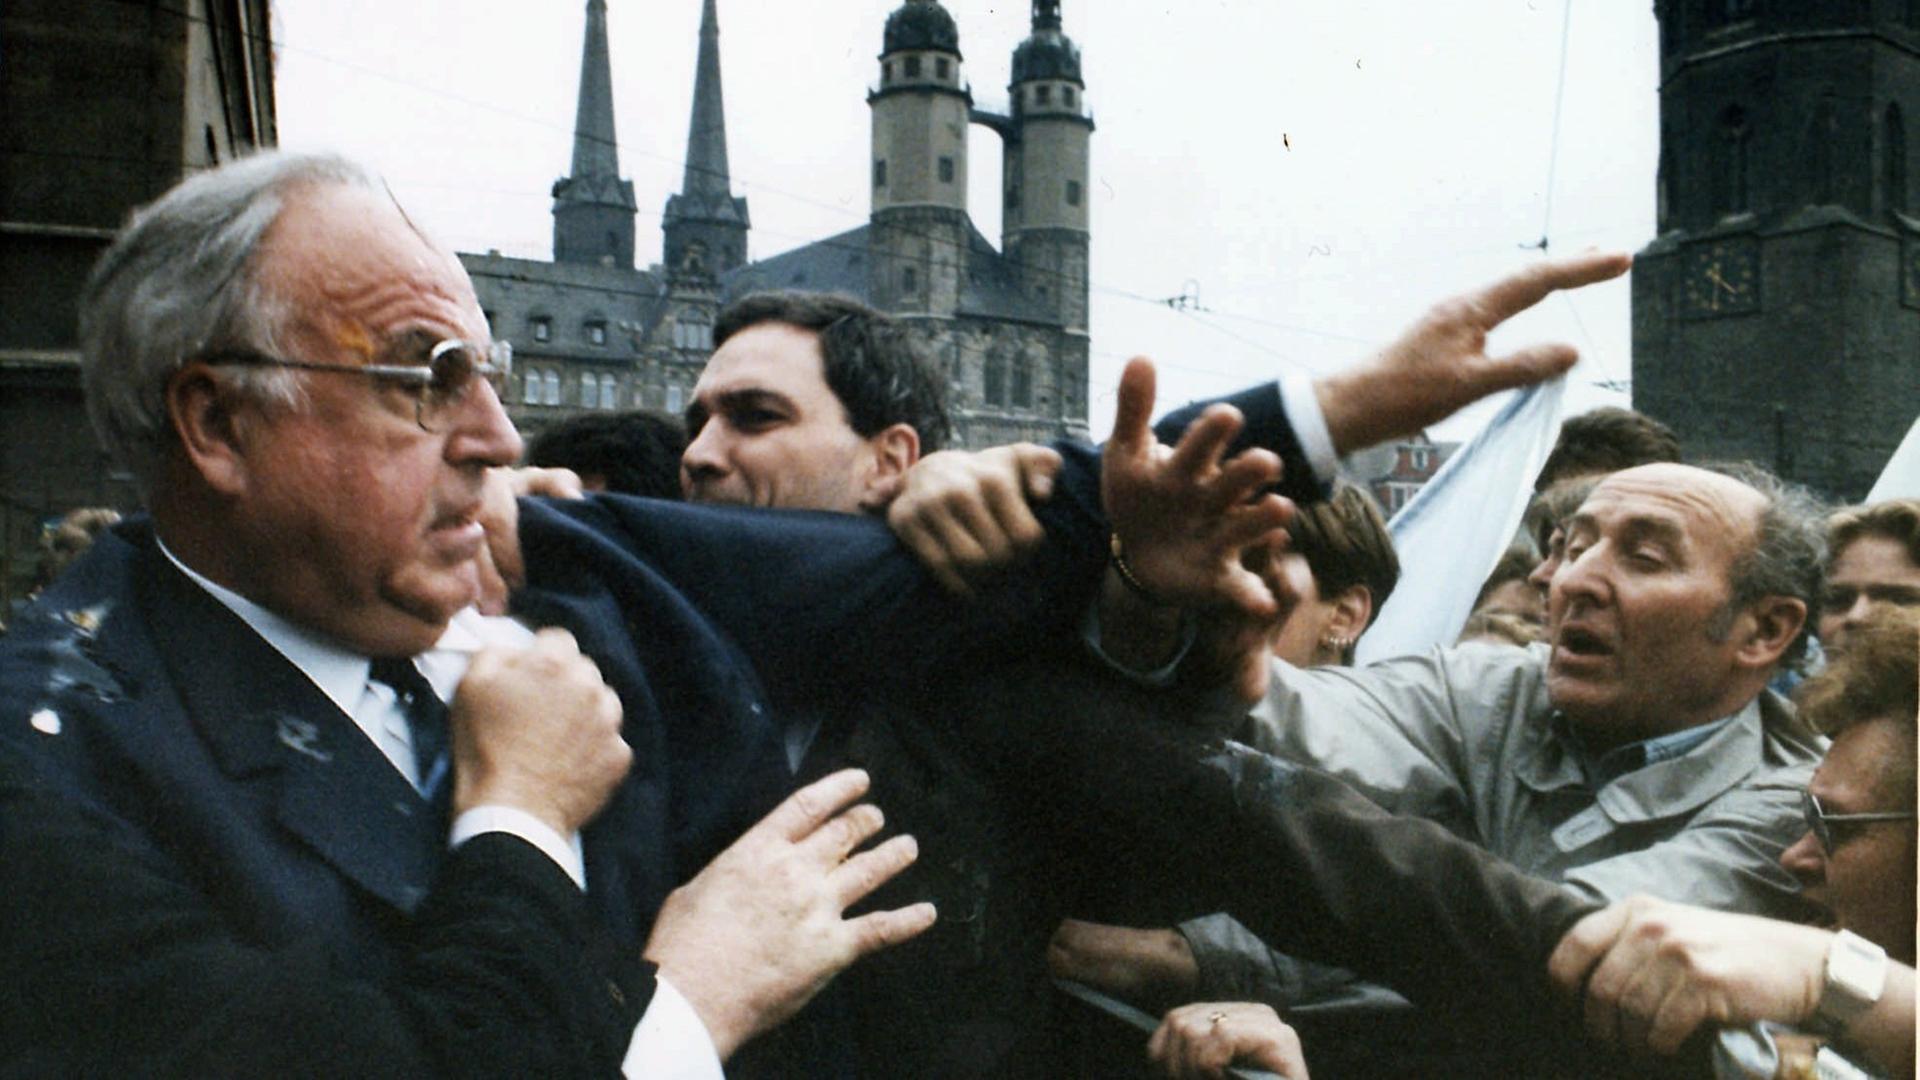 Helmut Kohl wird bei einer Veranstaltung in Halle bedrängt und mit Eiern beworfen.